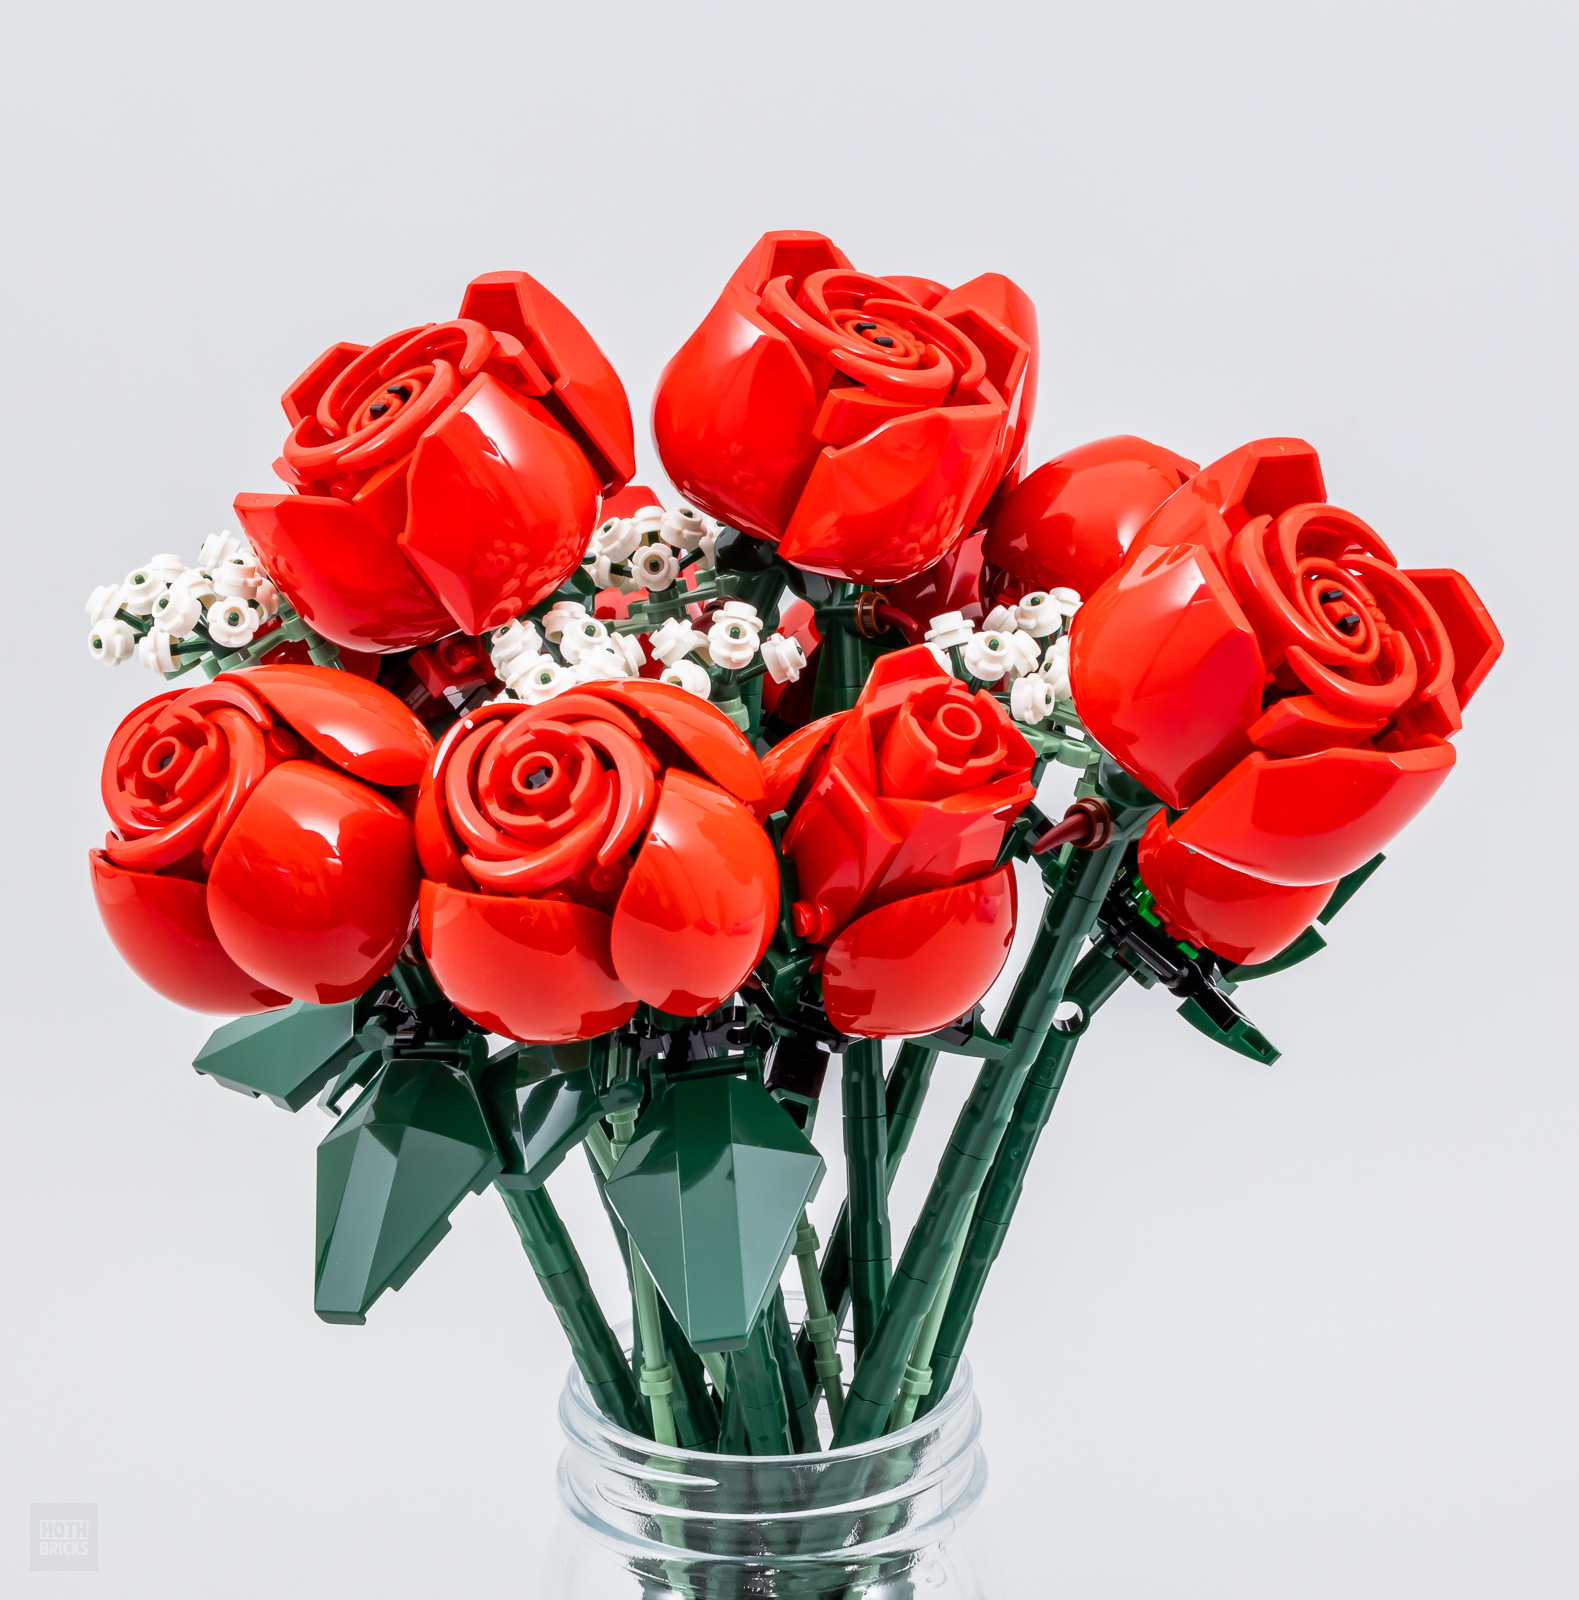 LEGO annuncia il Bouquet di Rose: un regalo perfetto per Natale e